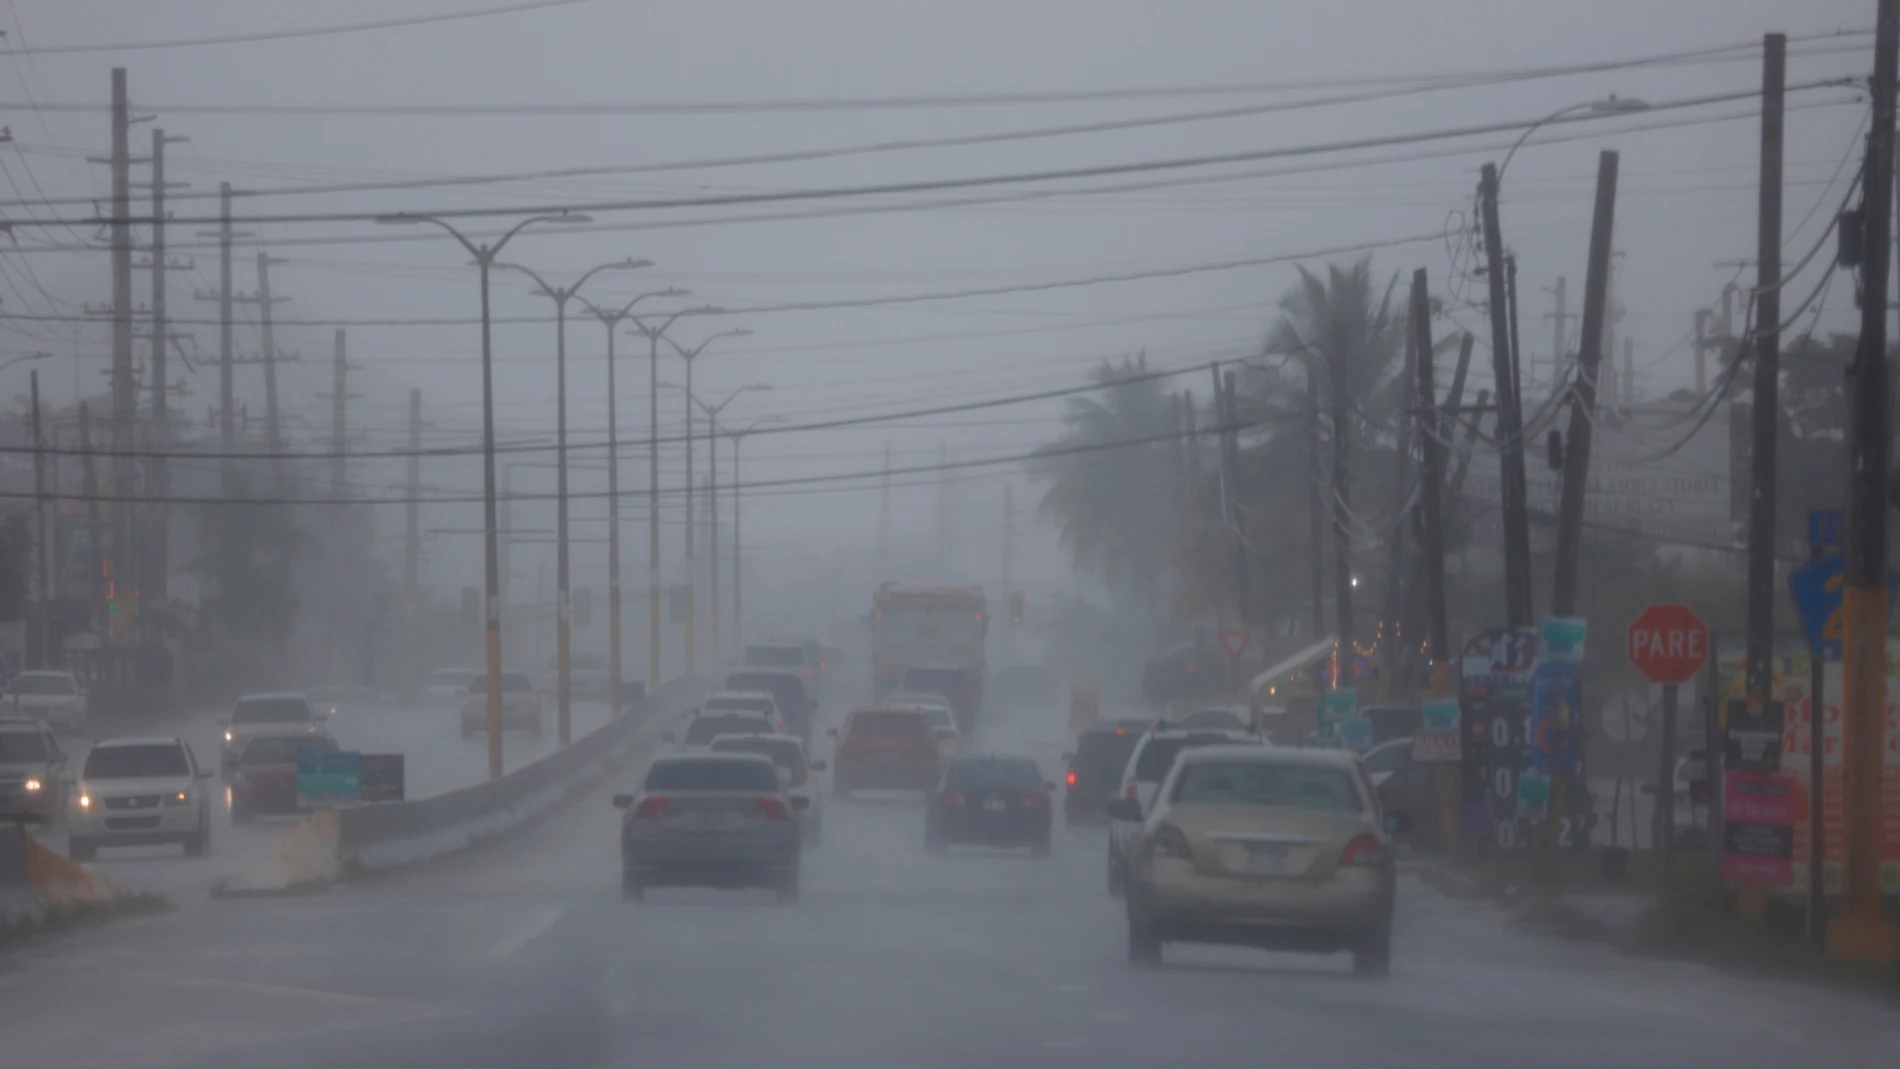 -FOTODELDIA- AME7862. VEGA ALTA (PUERTO RICO), 10/08/2021.- Carros transitan hoy por la Carretera 2 en plenas lluvias y entre la alerta por la posible tormenta tropical Fred, en Vega Alta (Puerto Rico). Puerto Rico se prepara para la llegada este martes de lo que podría llegar a ser la tormenta tropical Fred, que se espera deje en la isla hasta 10 centímetros de lluvia y vientos de hasta 56 kilómetros por hora, especialmente en el suroeste. Se ha ordenado que los funcionarios cesen sus labores a partir del mediodía, con excepción de quienes trabajan en servicios esenciales, según el gobernador Pedro Pierluisi. EFE/ Thais Llorca